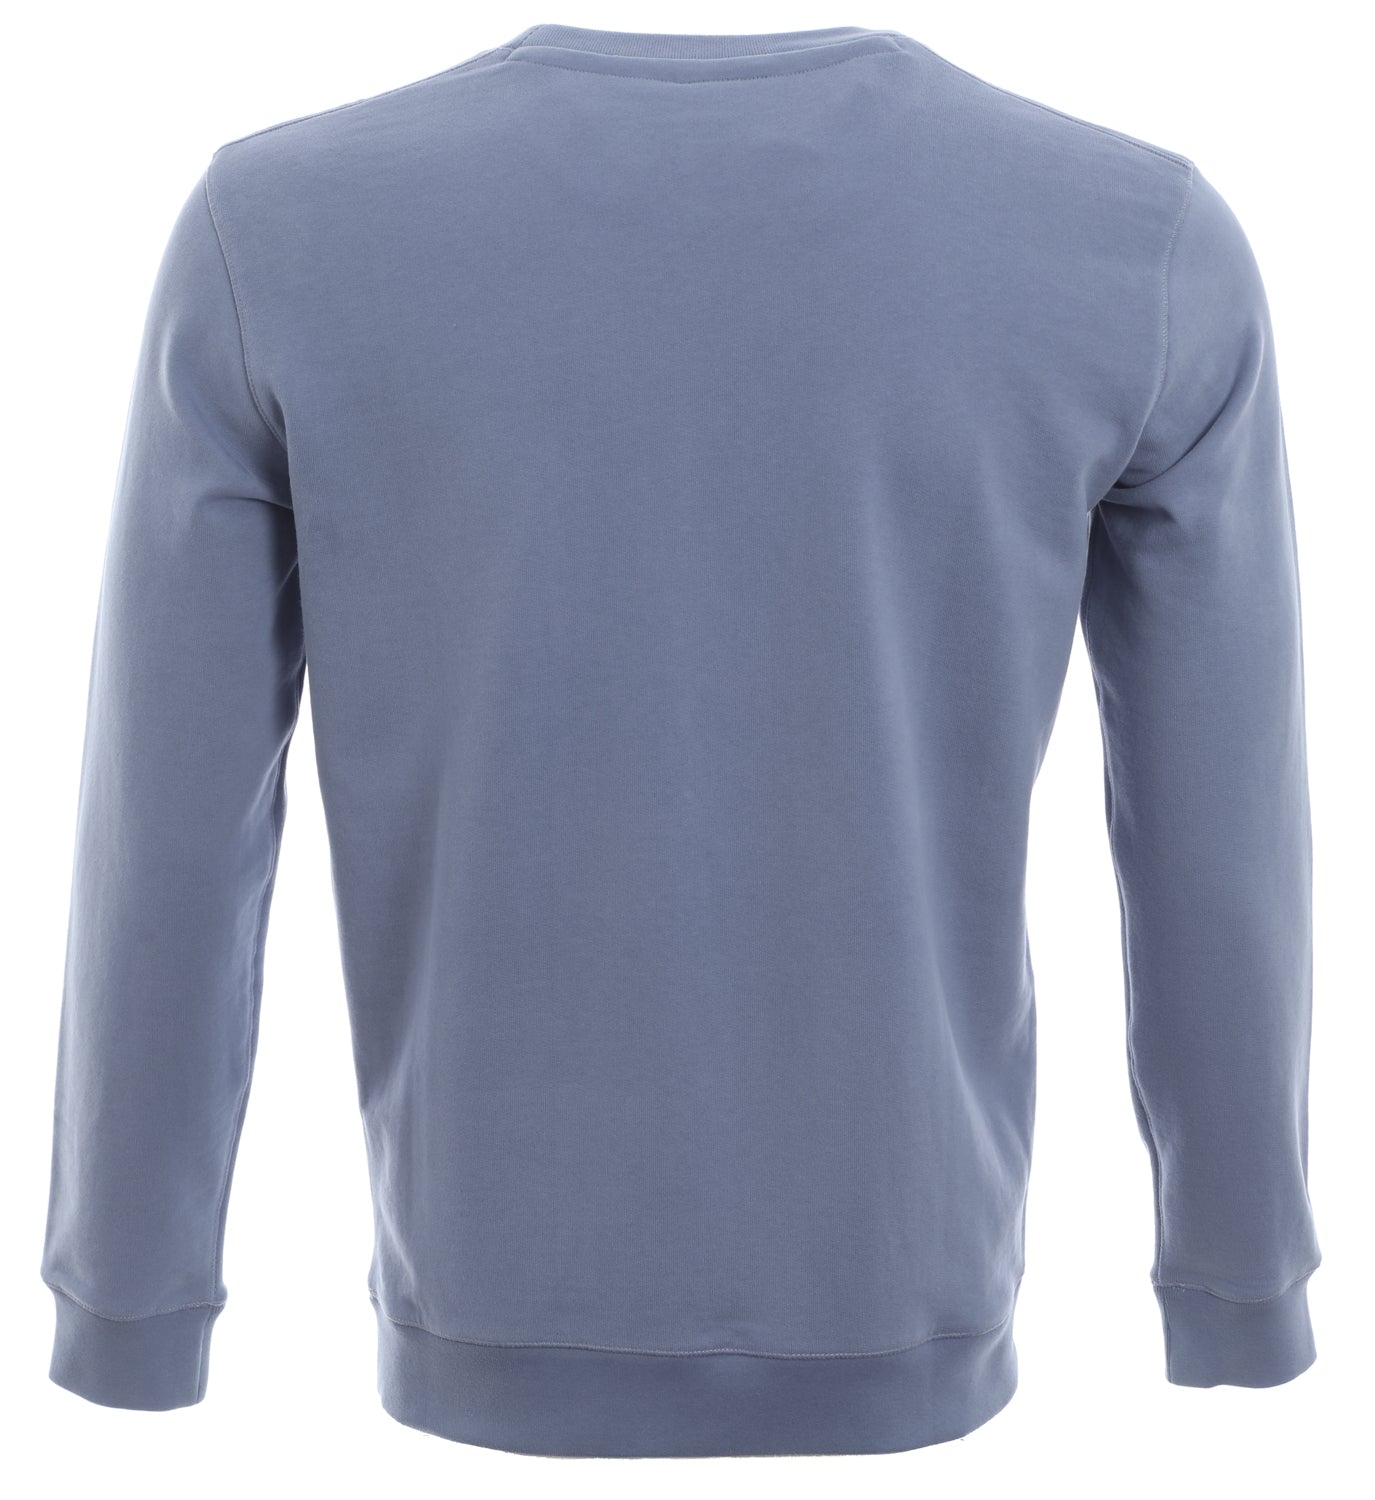 BOSS Weevo 2 Sweatshirt in Airforce Blue